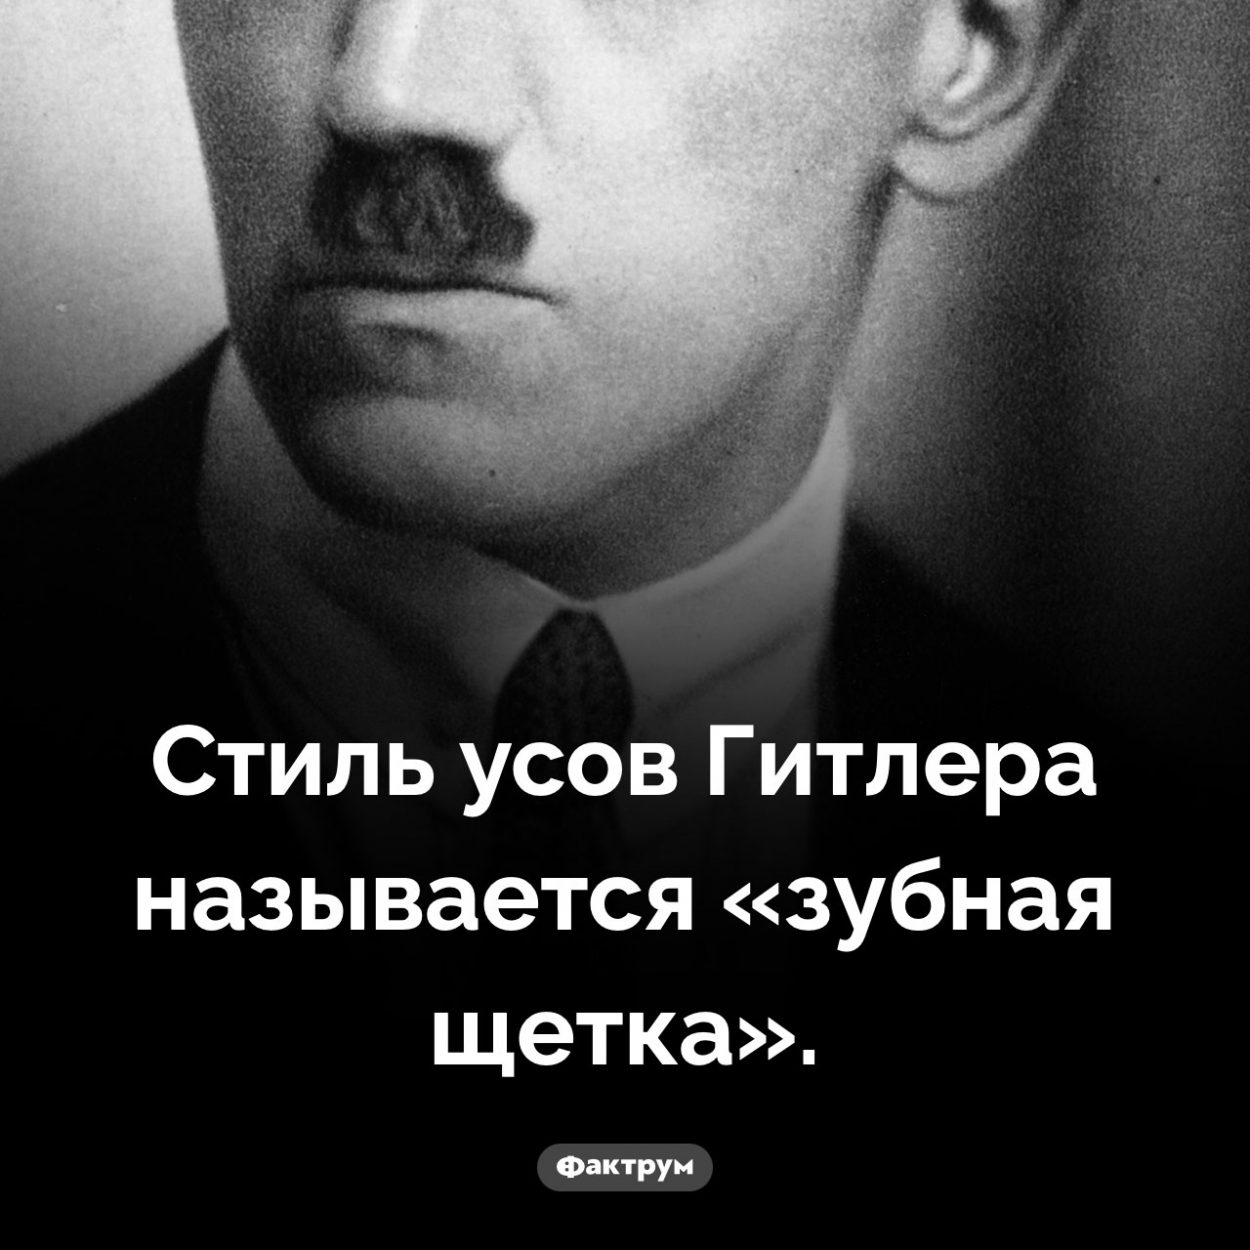 Гитлер носил усы «зубная щетка». Стиль усов Гитлера называется «зубная щетка».